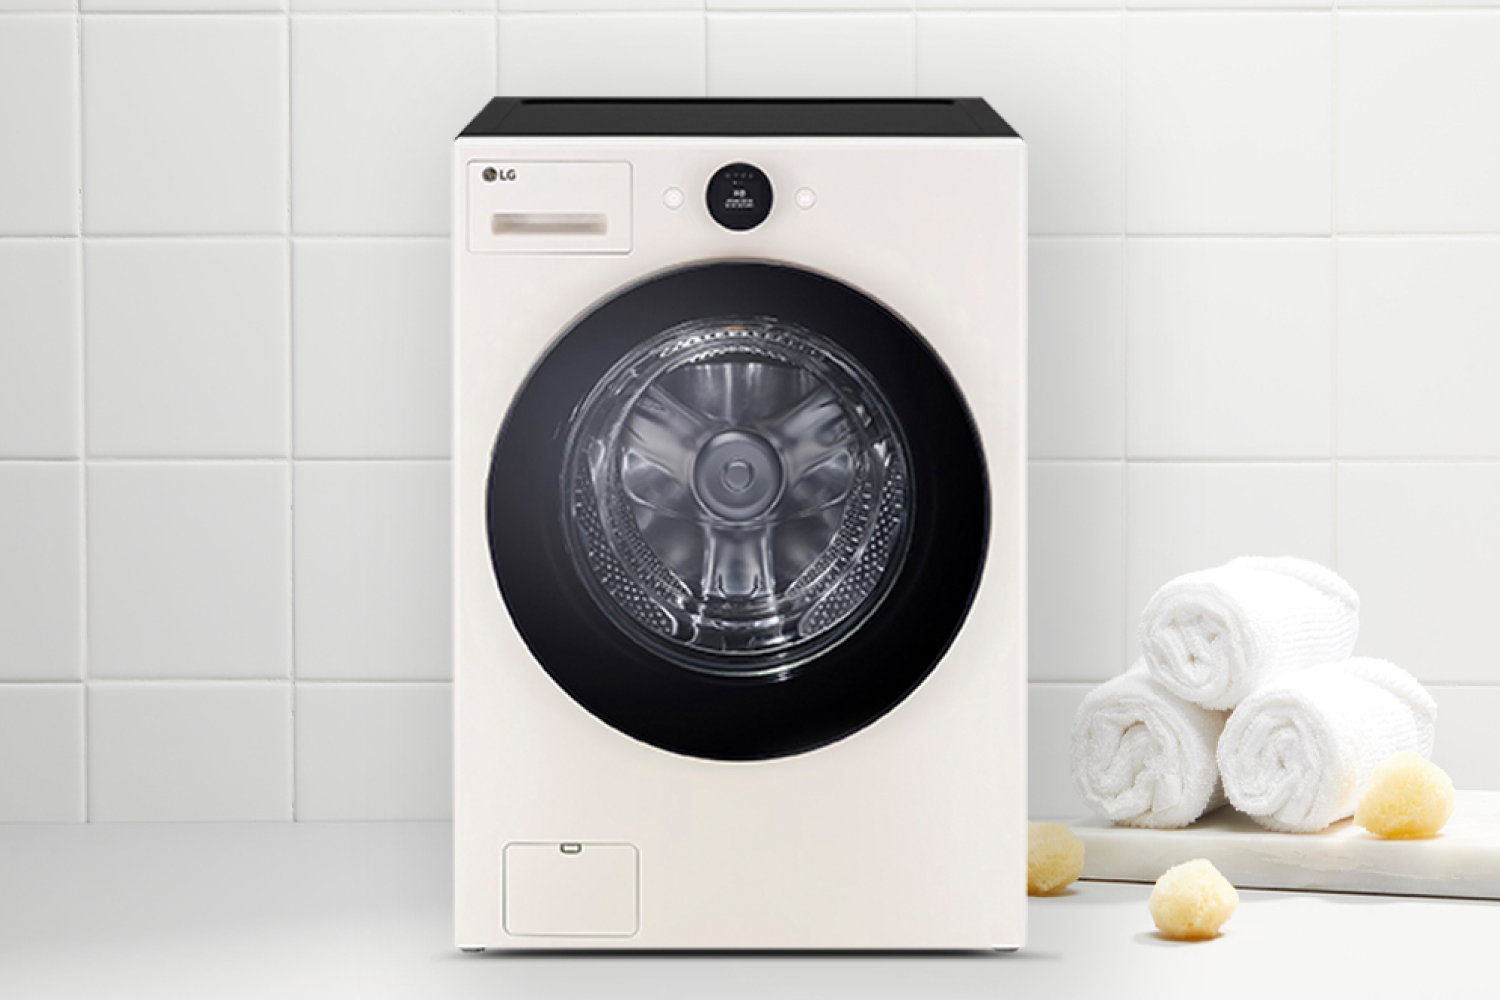 LG 트롬 오브제 세탁기 제품번호와 모델명으로 알아보기